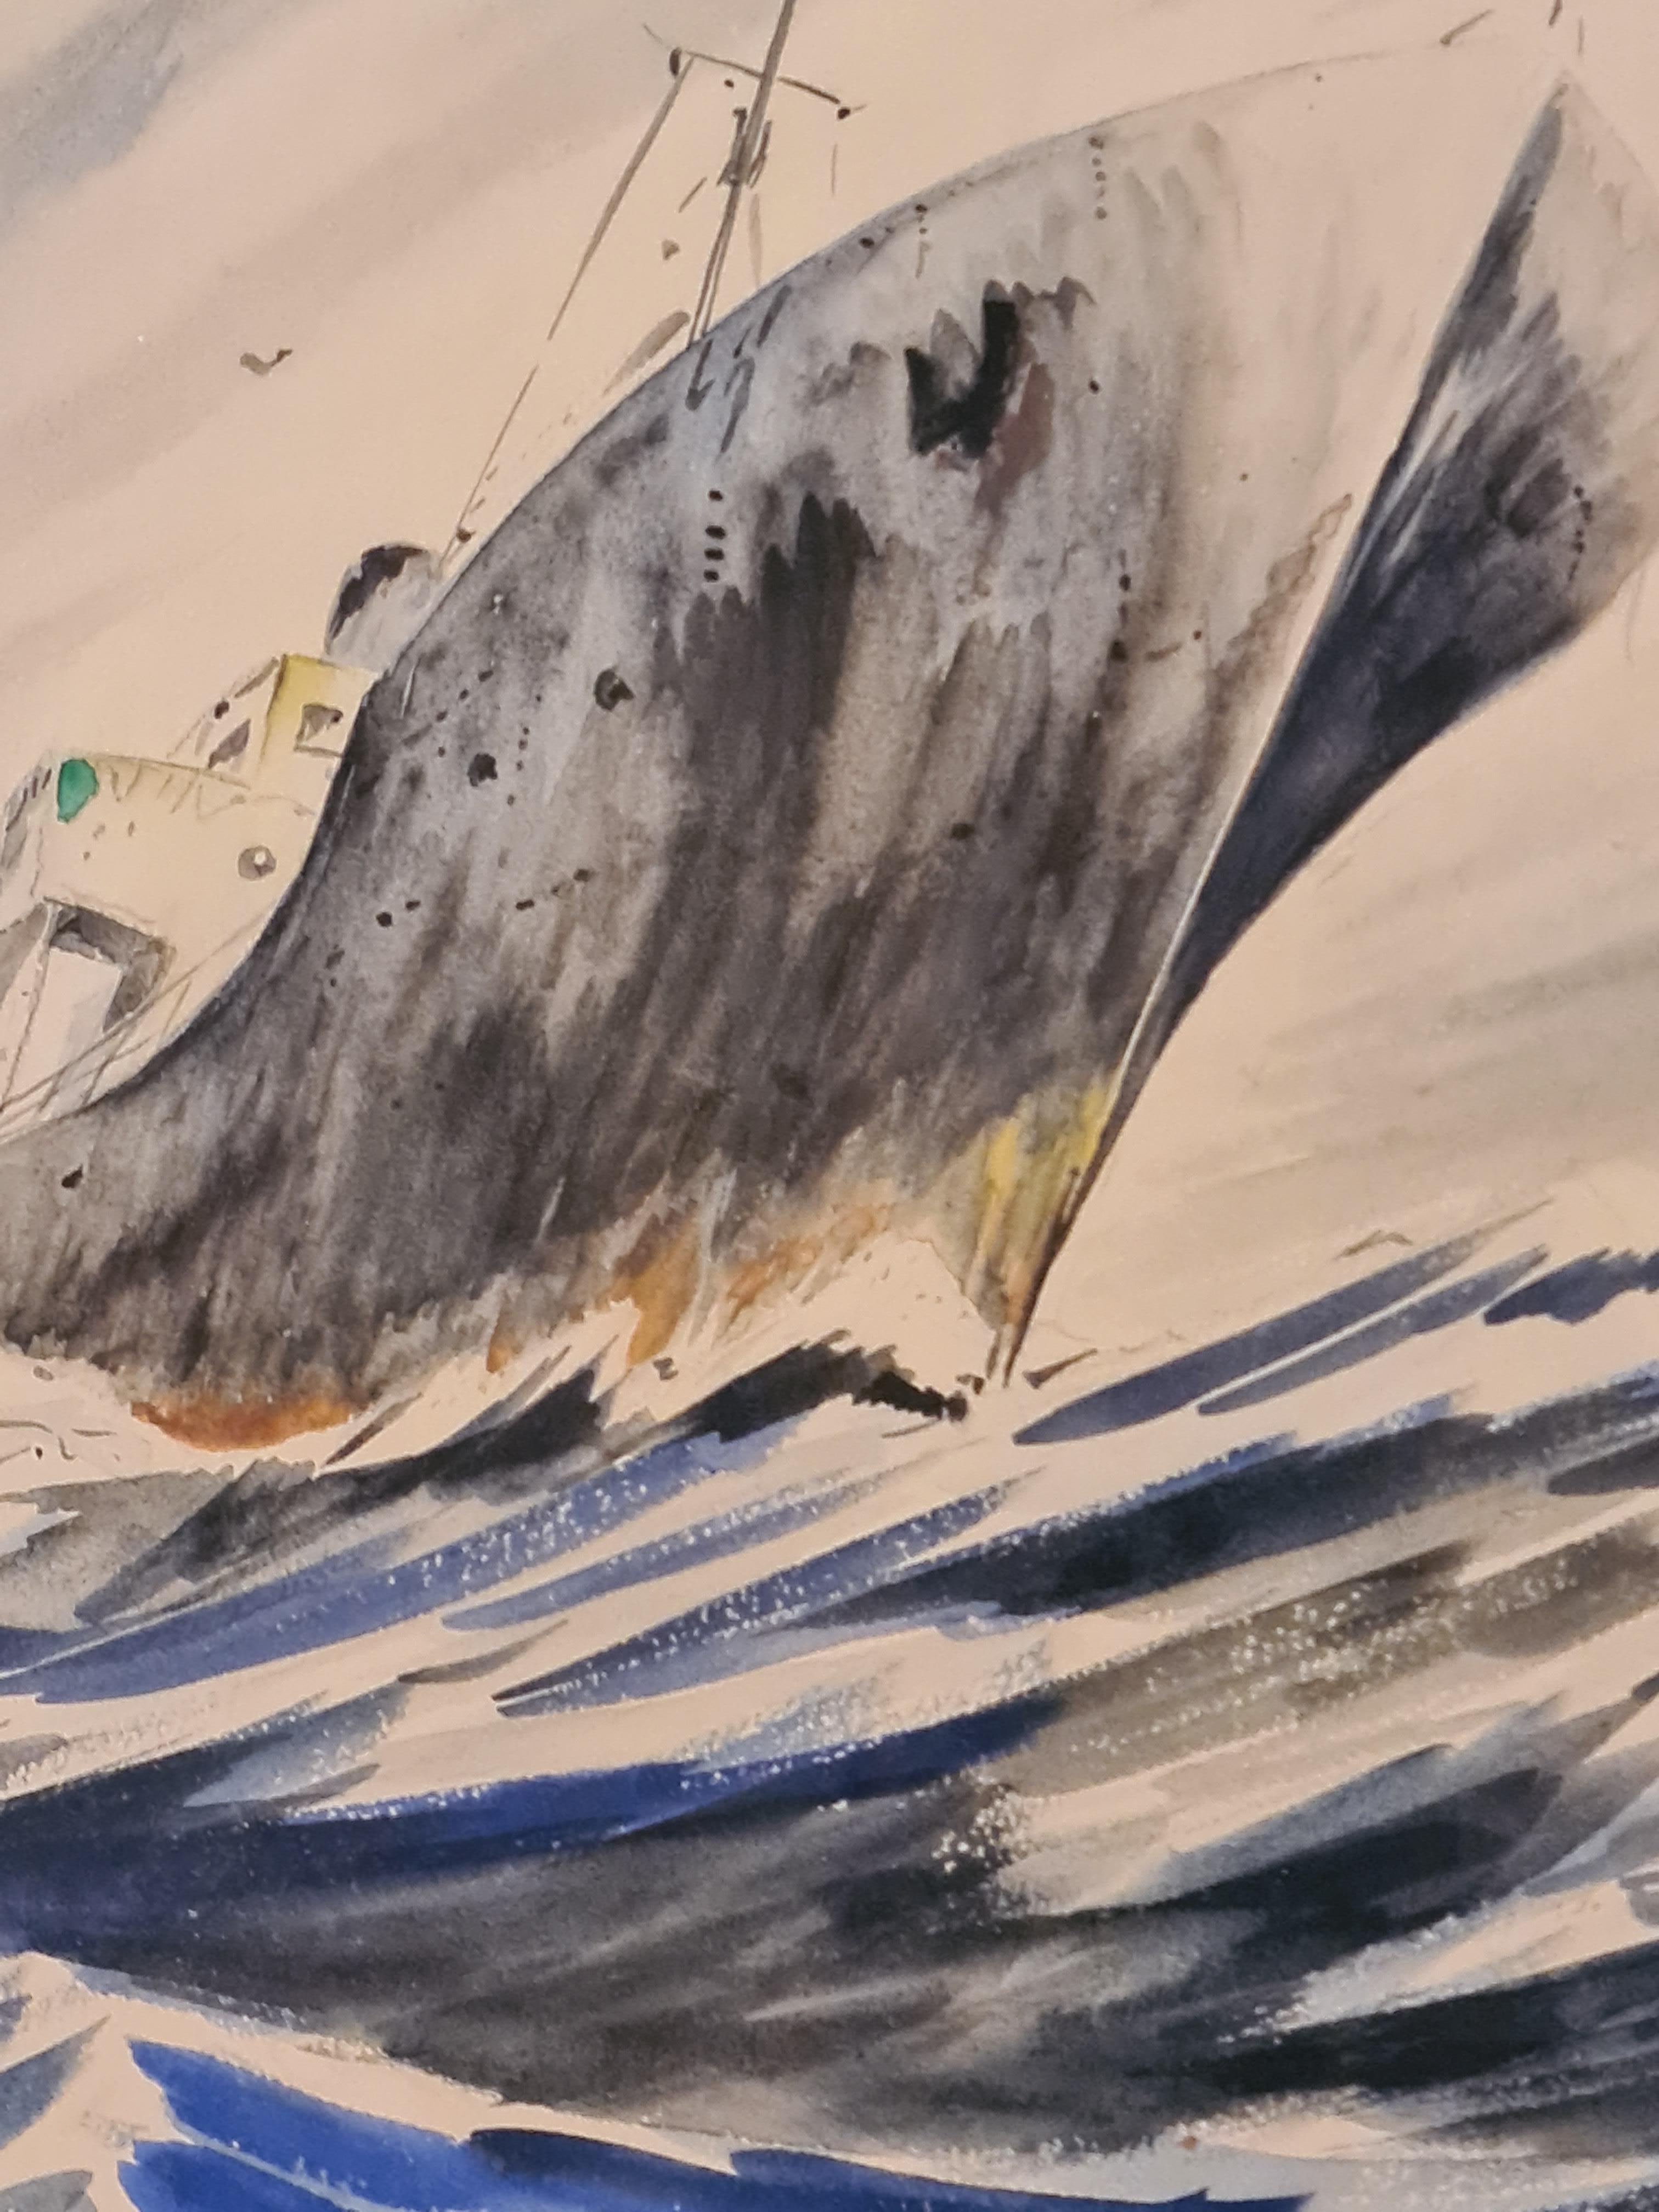 Französische Gouache auf Papier mit einem Boot auf dem Meer. Das Werk ist unsigniert, aber mit 22/11/70 datiert. Präsentiert in einfachem Goldrahmen mit handgeschnittenem Passepartout.

Ein wirklich fesselndes und kraftvolles Gemälde. Dem Künstler